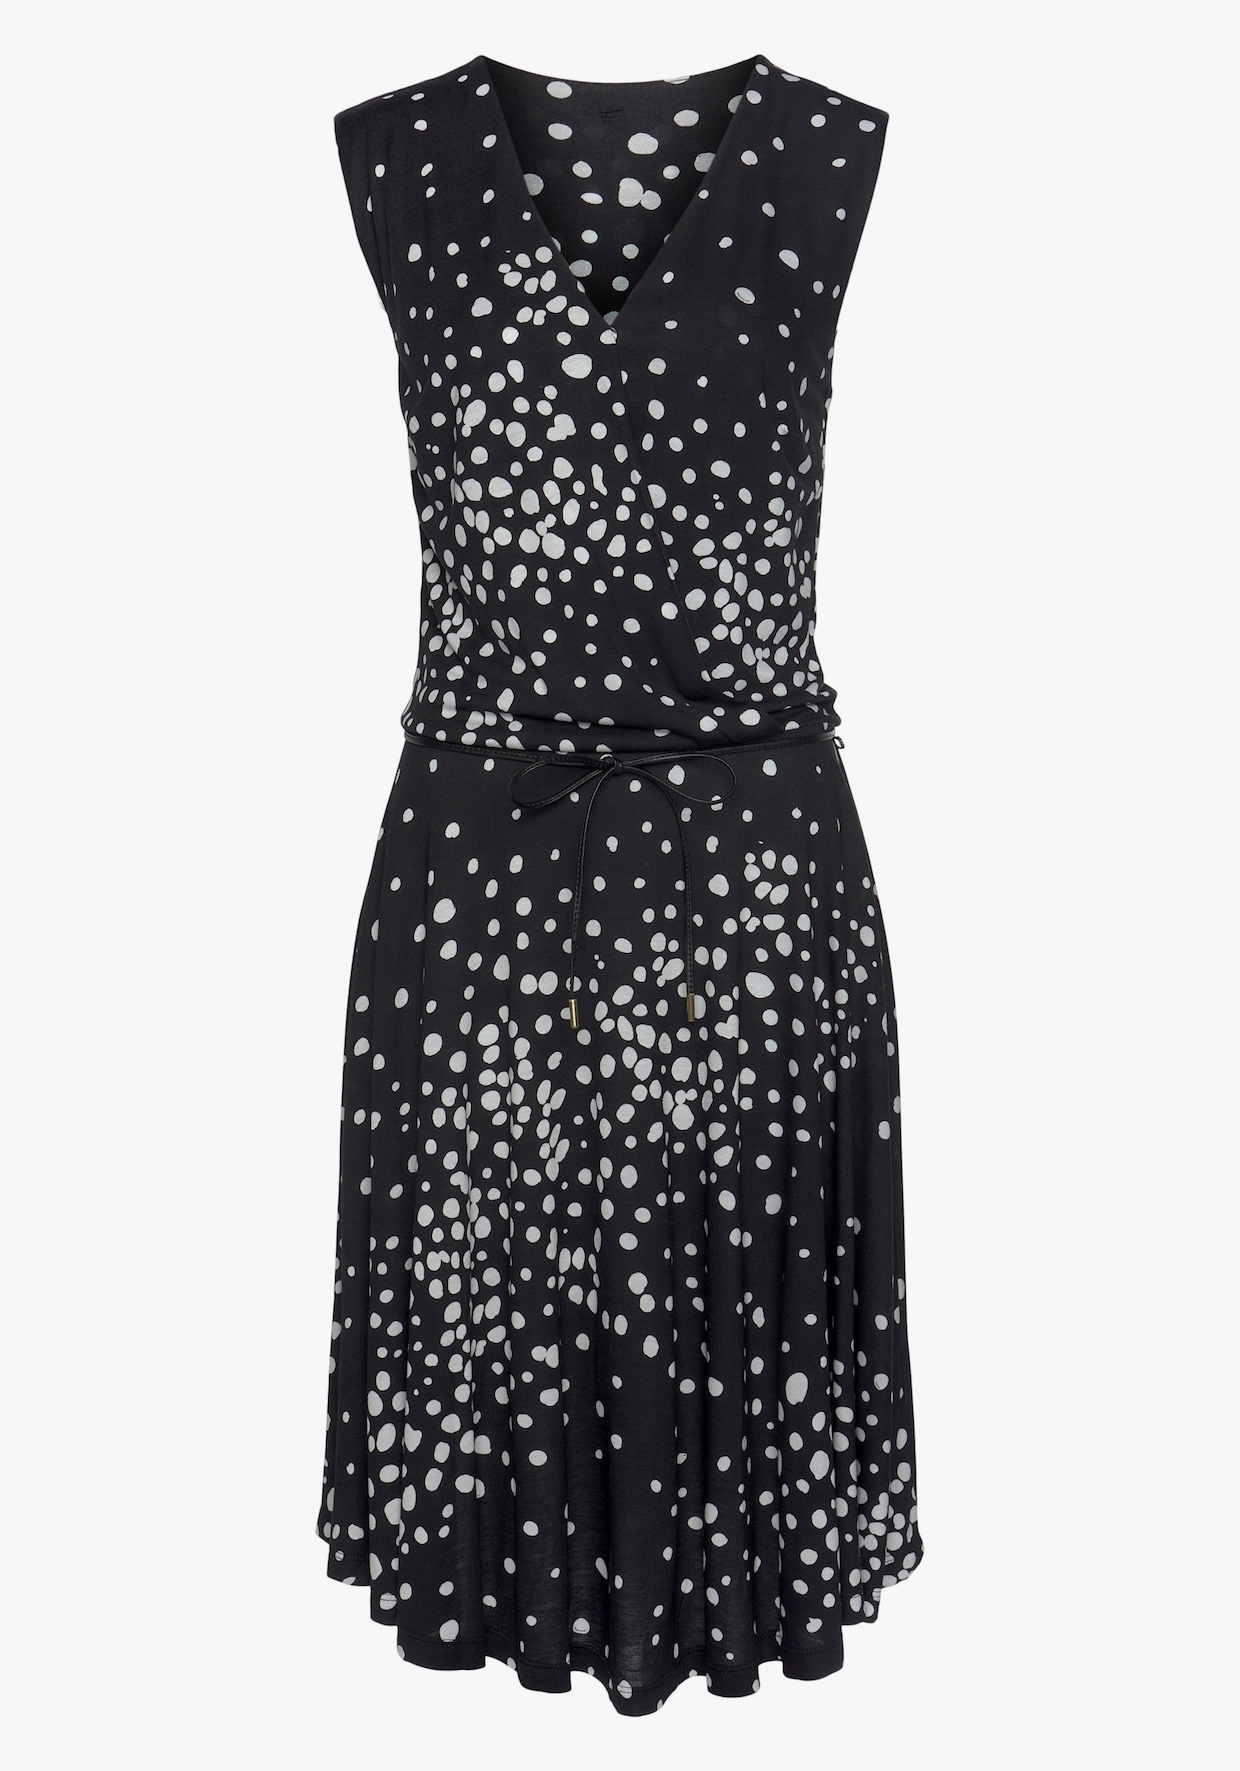 Vivance Jersey jurk - zwart/wit geprint